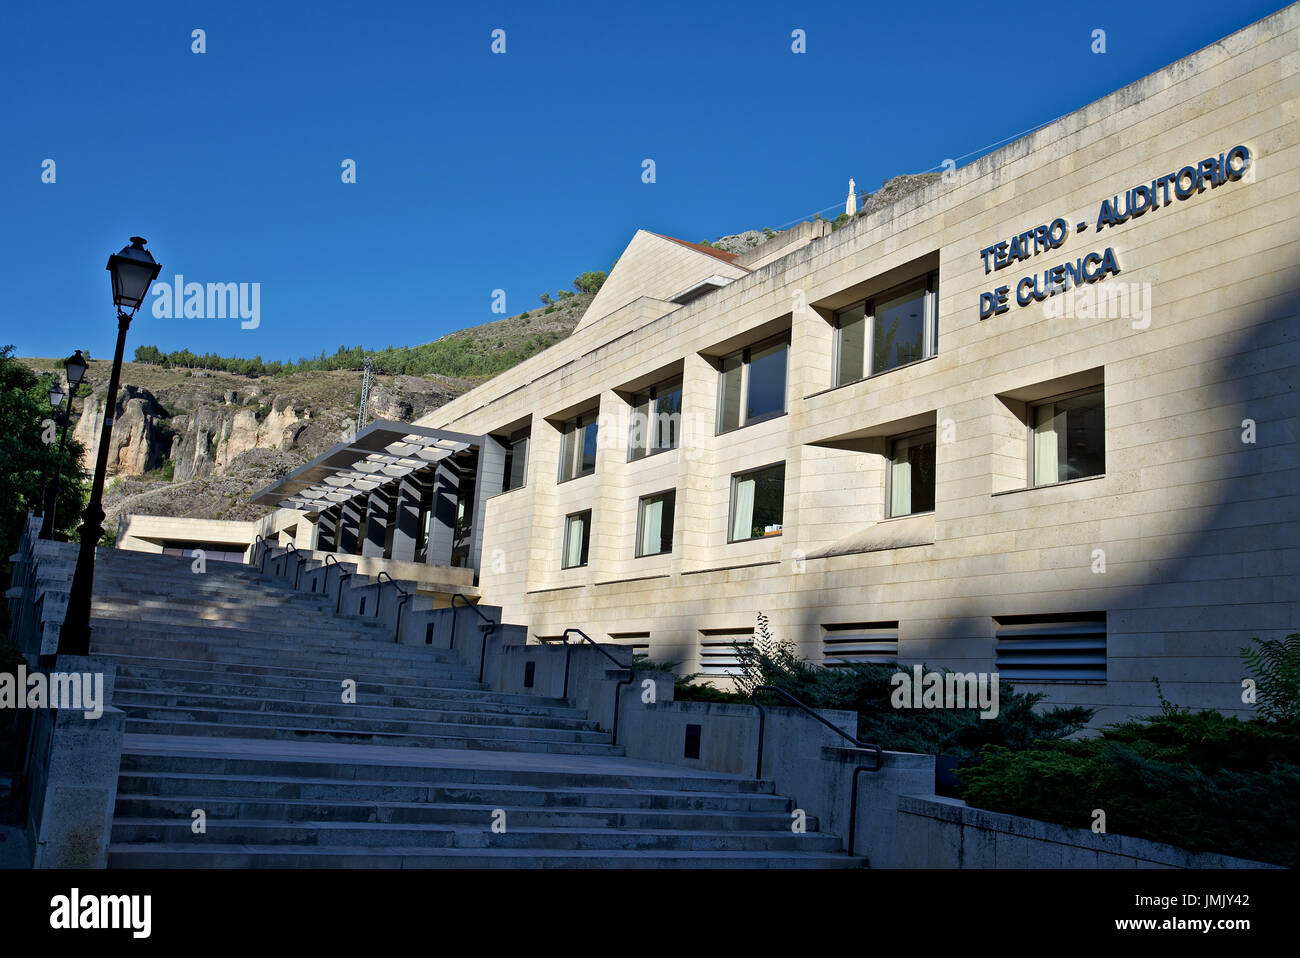 Immagine dell'Auditorium/teatro di Cuenca , Castilla La Mancha, in Spagna. Un edificio moderno e contemporaneo. Foto Stock